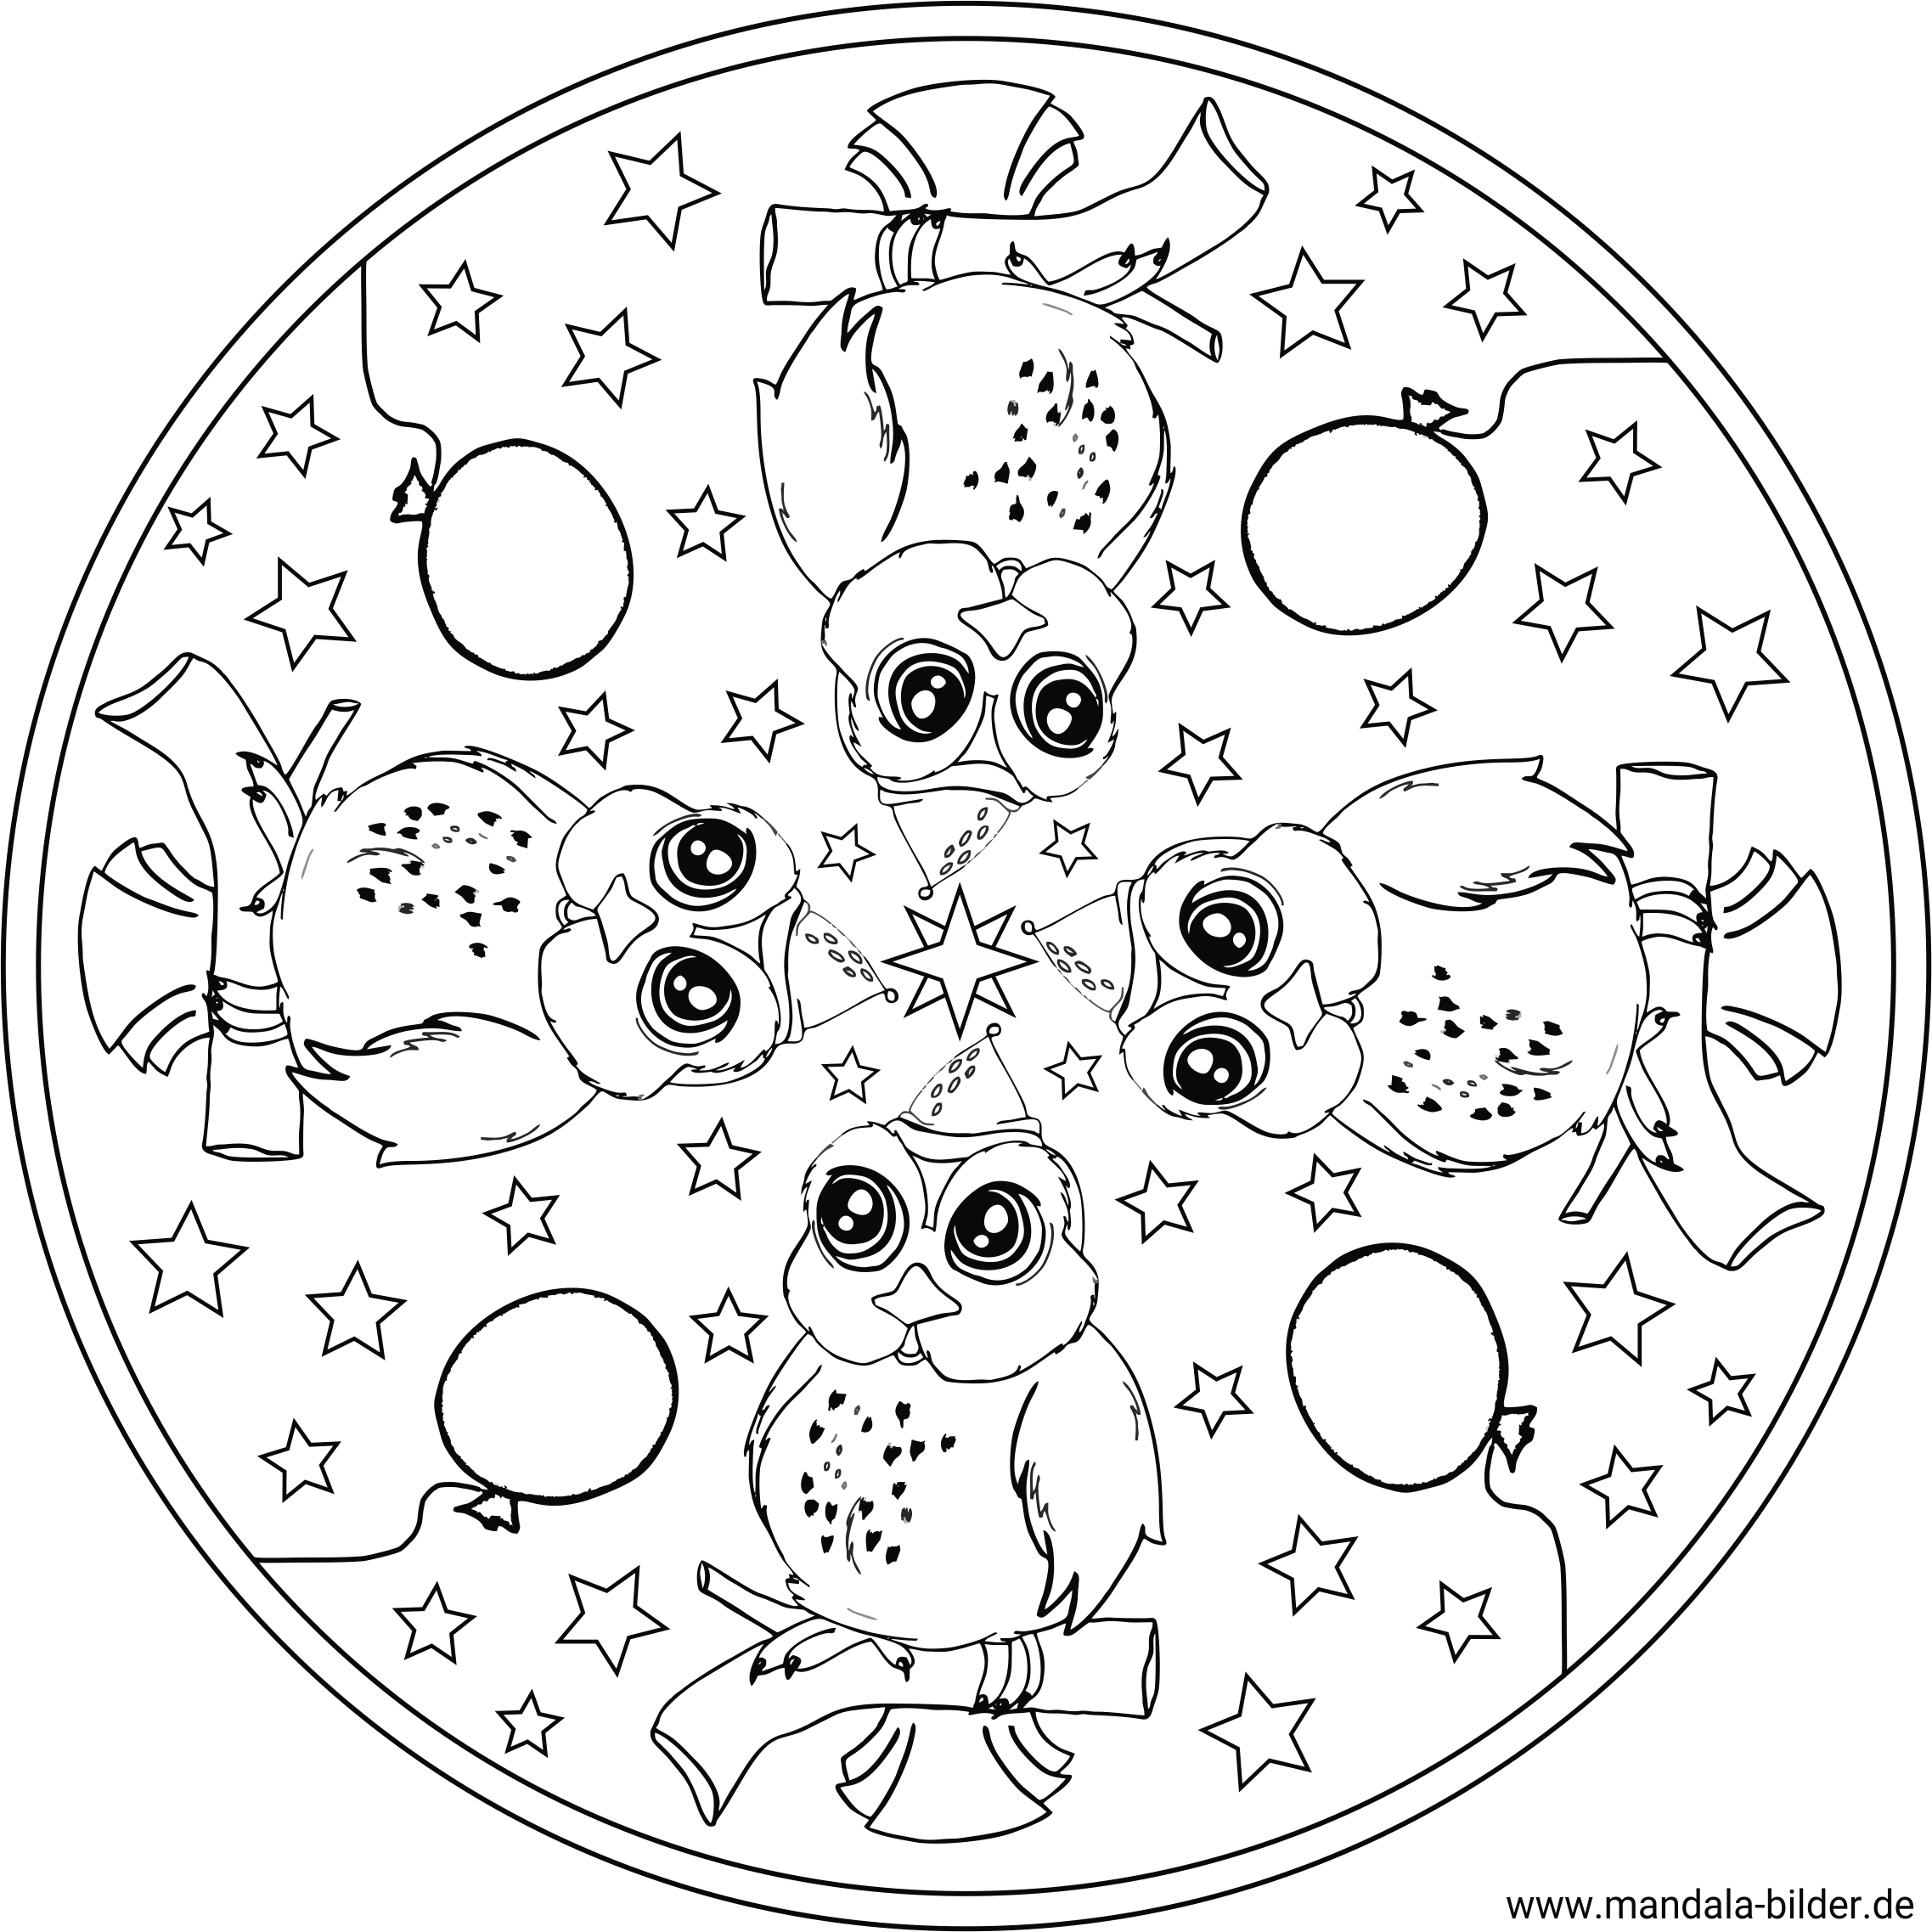 Mandala Ausmalbild mit vier Eulen - Kindergeburtstag, Geburtstag, Party, Feste